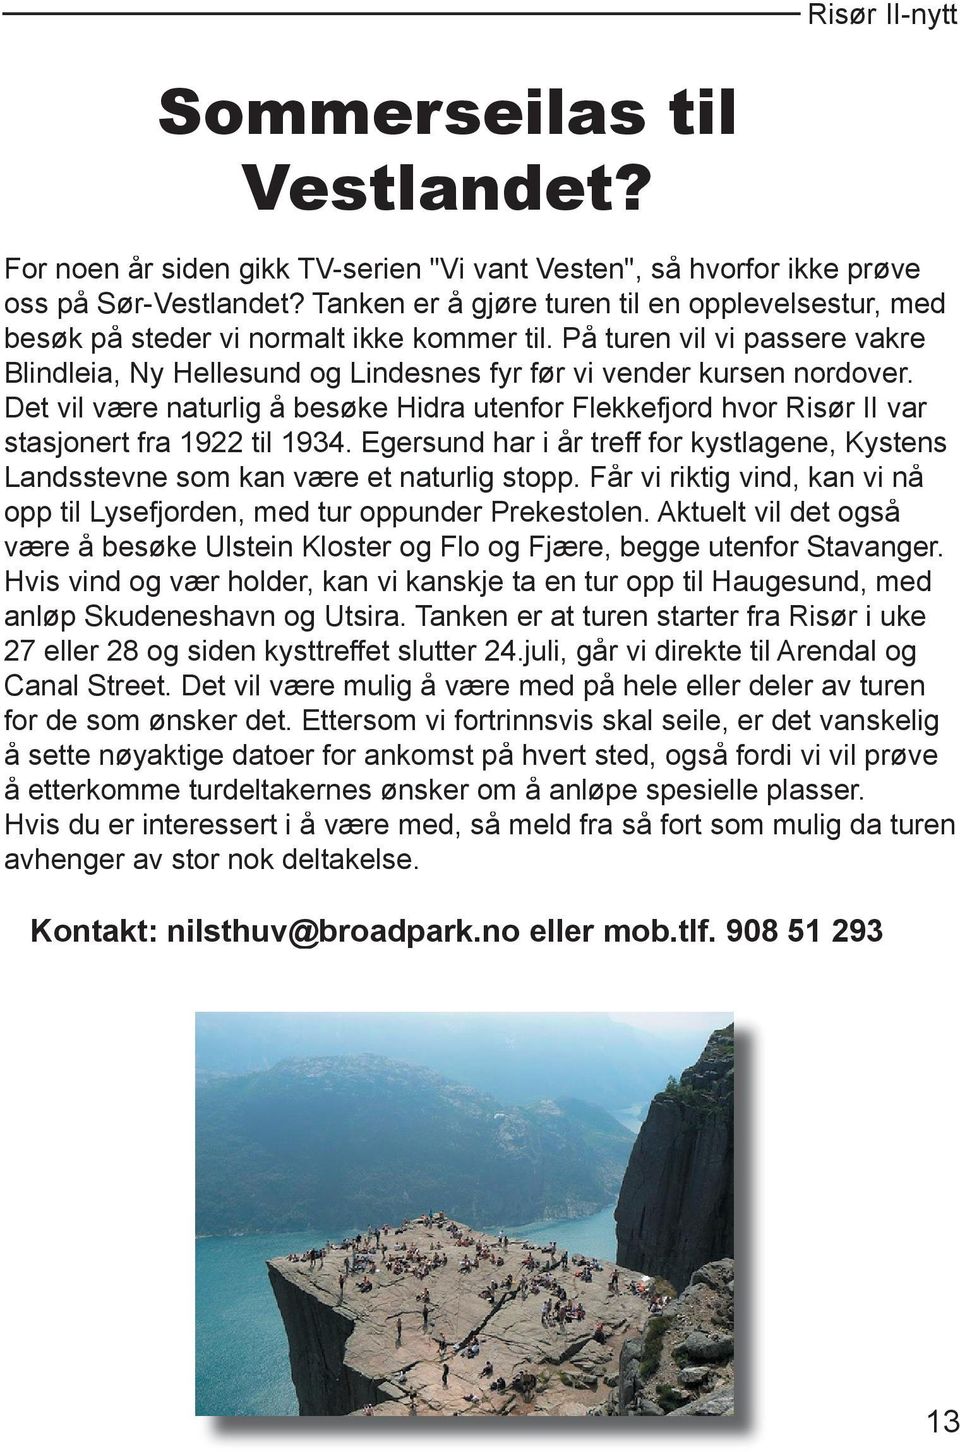 Det vil være naturlig å besøke Hidra utenfor Flekkefjord hvor Risør II var stasjonert fra 1922 til 1934. Egersund har i år treff for kystlagene, Kystens Landsstevne som kan være et naturlig stopp.